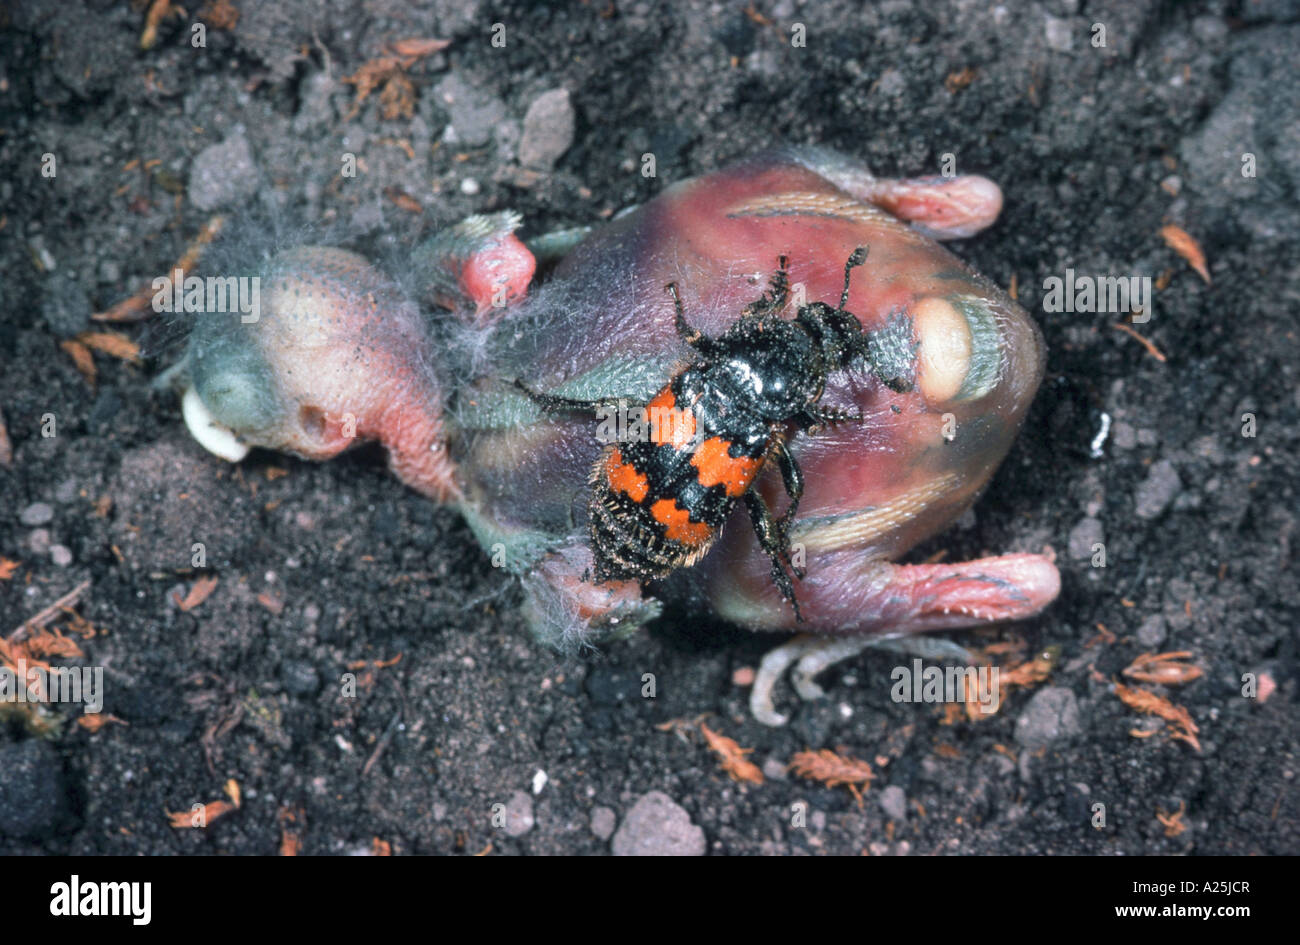 burying beetle (Necrophorus vespilloides), on dead young bird Stock Photo